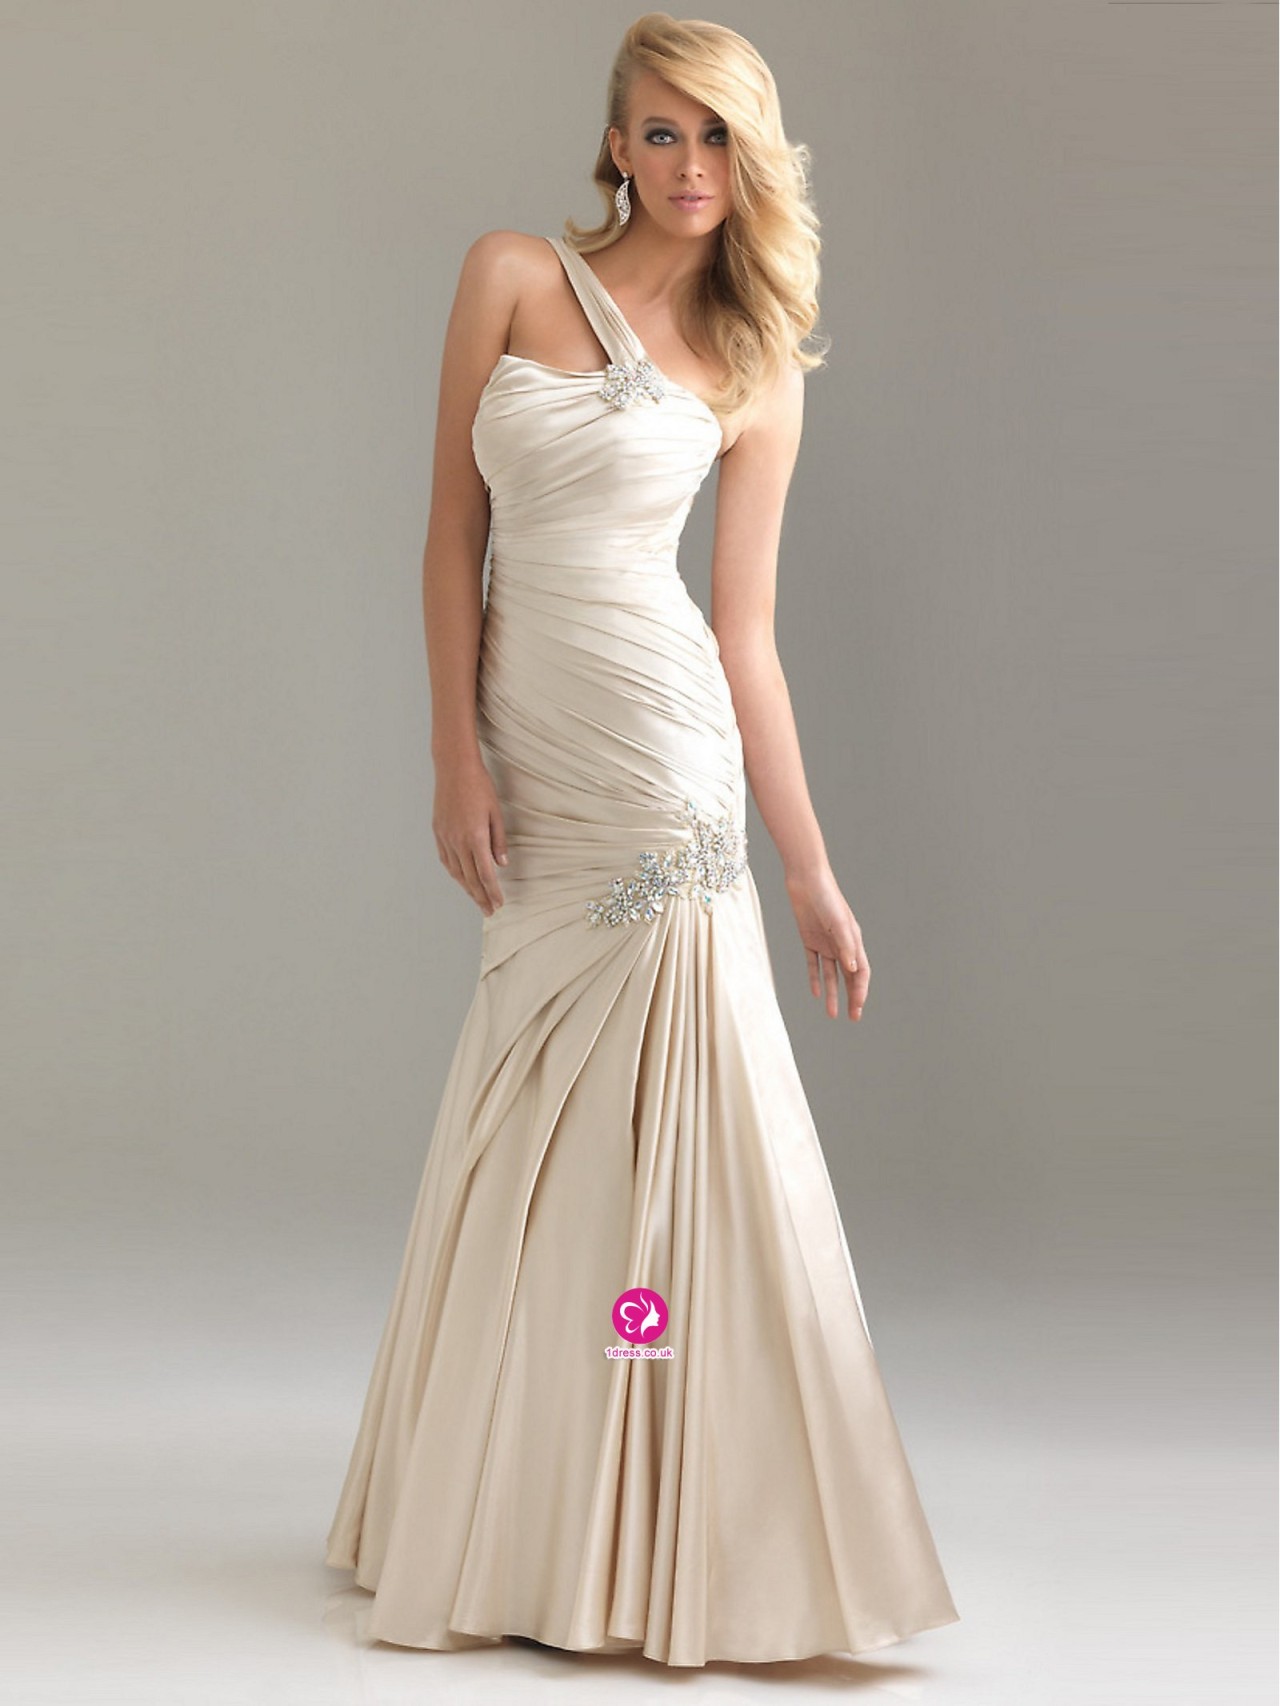 White floor length prom dress